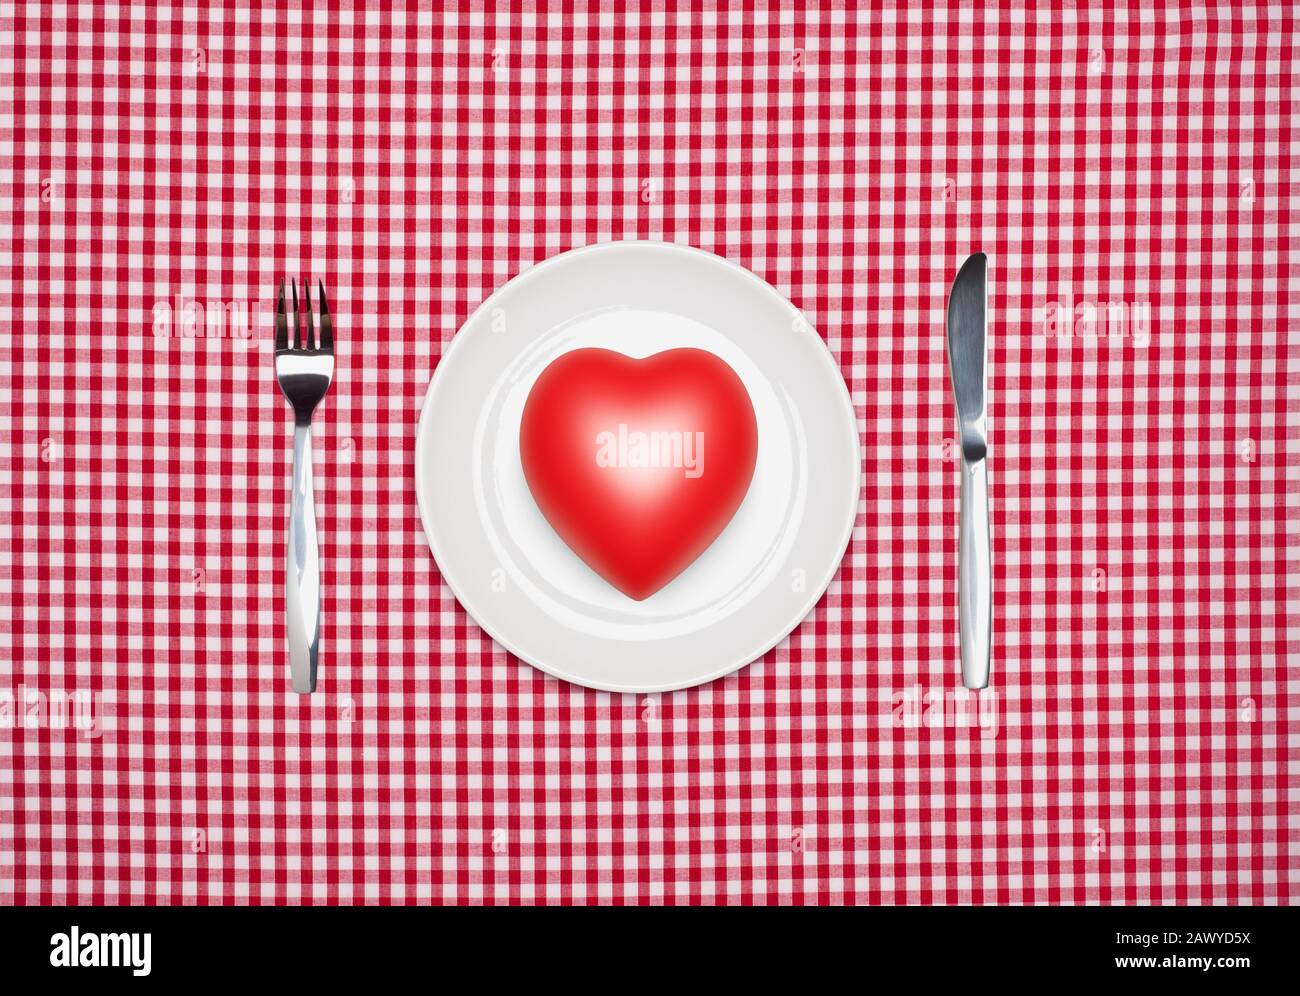 Concepto de alimentación saludable, un corazón rojo en un plato blanco redondo con cuchillo y tenedor desde arriba en un mantel rojo de vichy Foto de stock